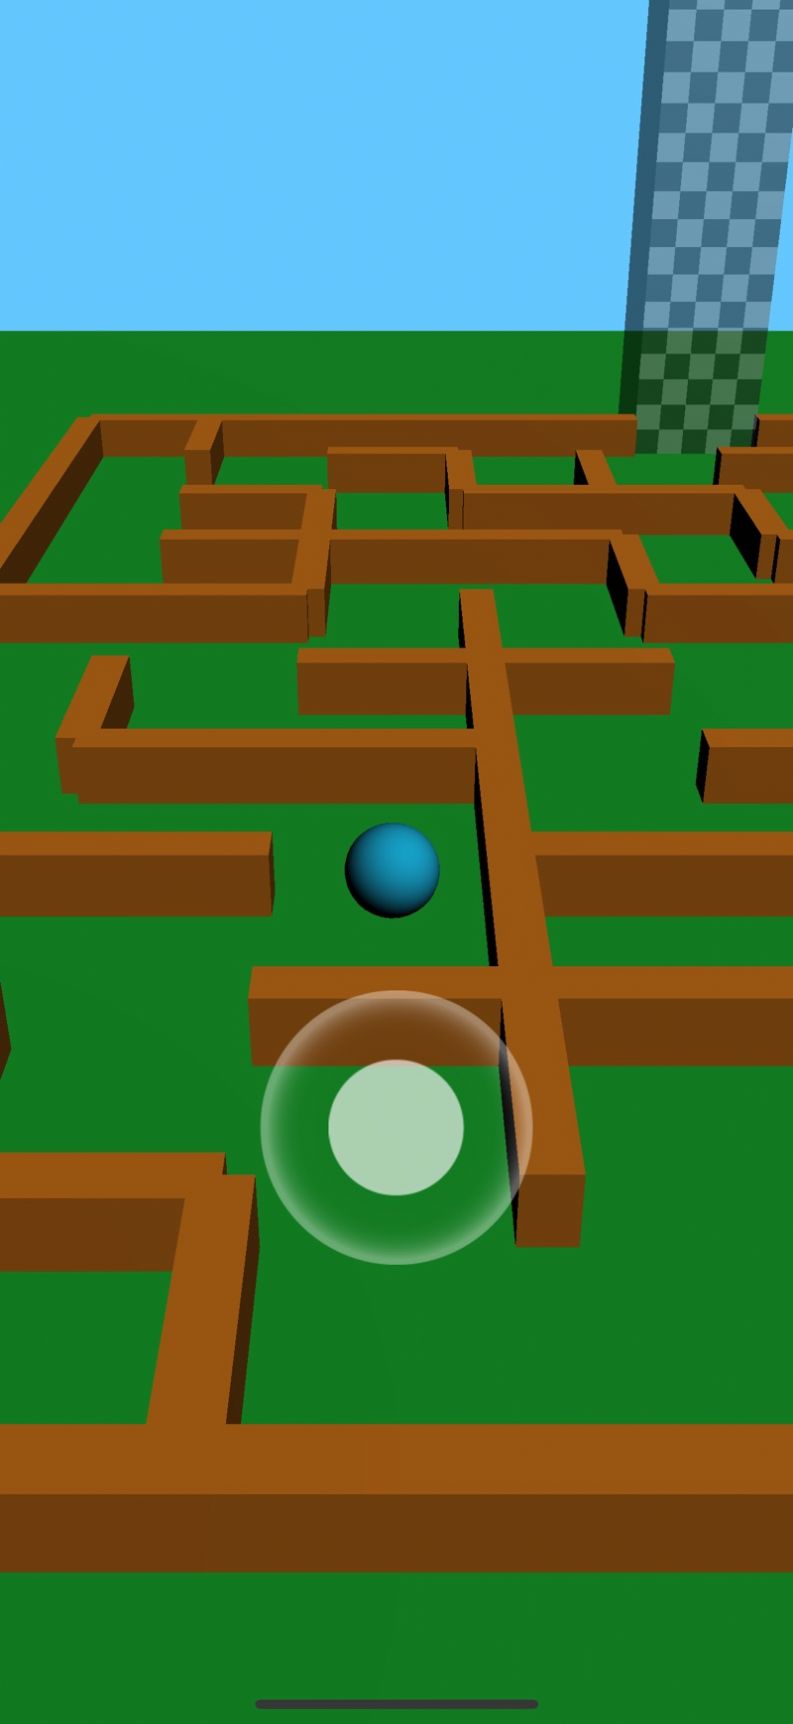 手机上关于迷宫的游戏叫啥_迷宫游戏app_迷宫游戏有哪些手游